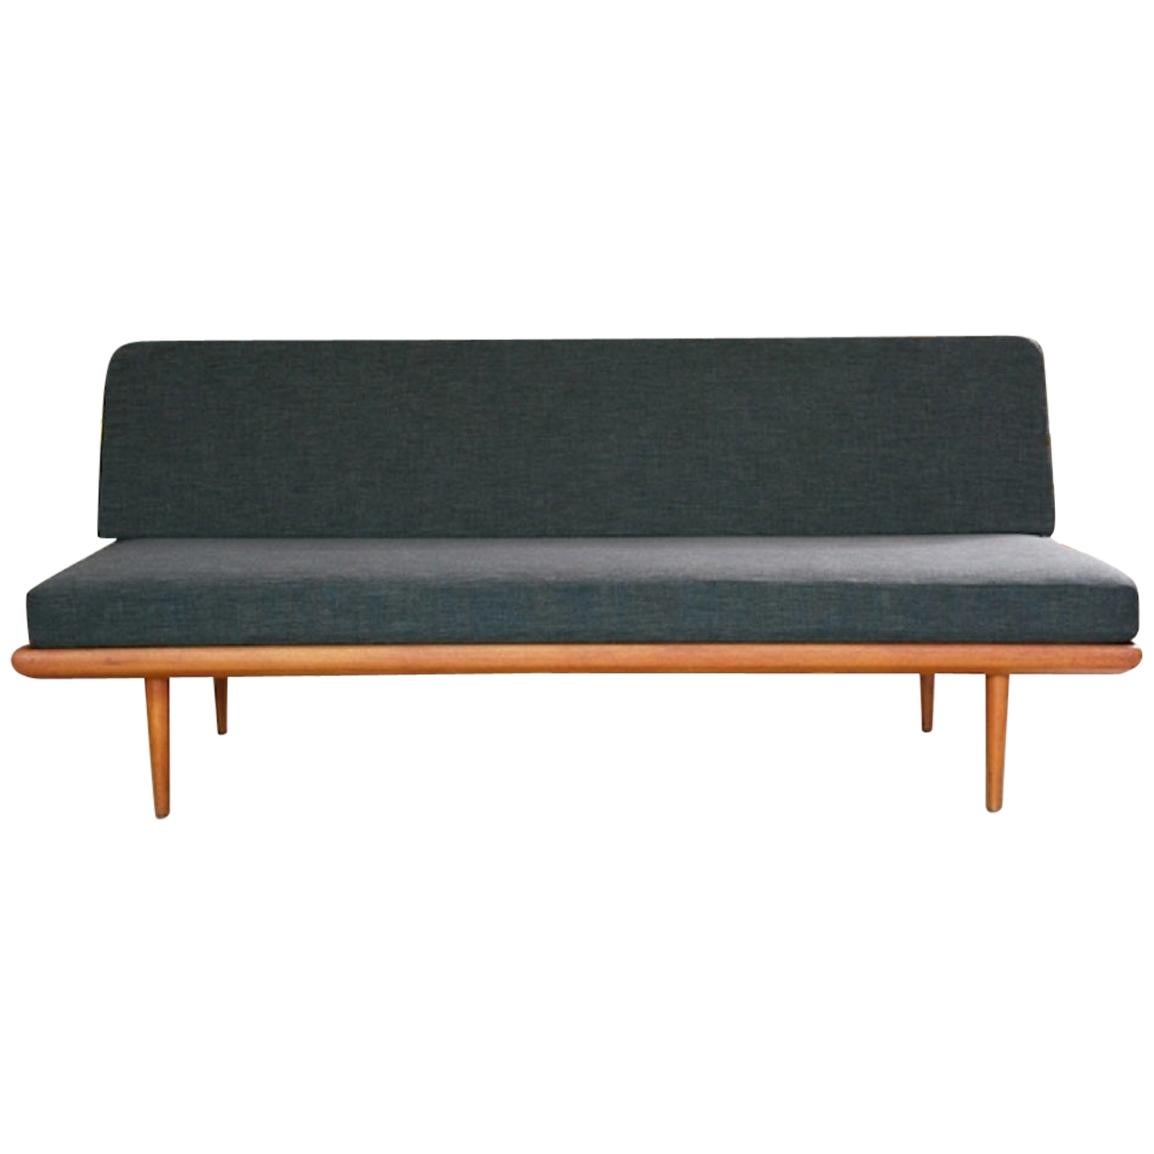 Couch / Daybed "Minerva" France & Son, Hvidt & Mølgaard-Nielsen, 1955 For Sale